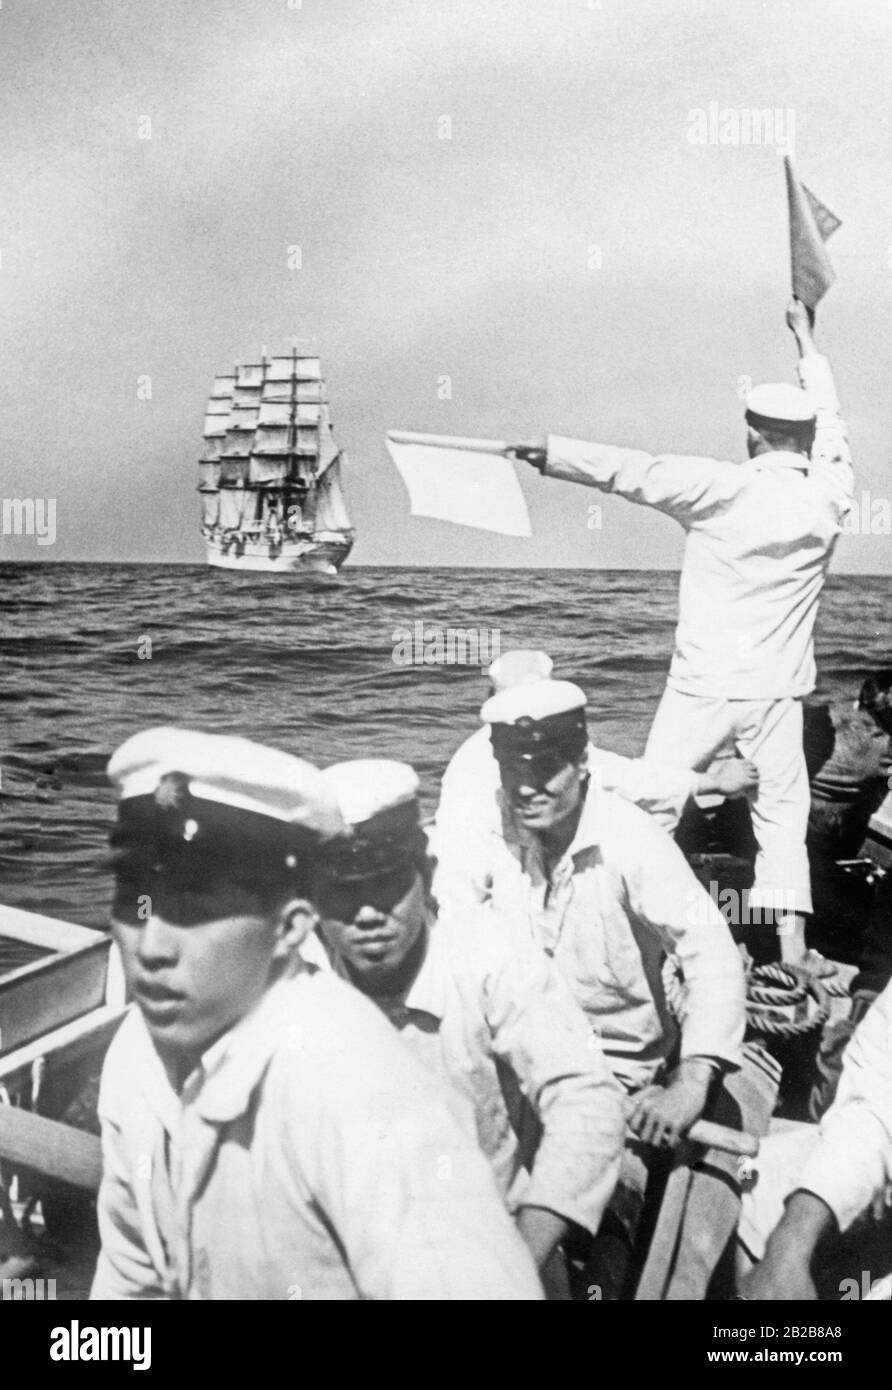 Blick auf das Meer vor der japanischen Küste. Im Vordergrund stehen einige Kadetten der Marineschule Tokio der Kaiserlich japanischen Marine in einem Ruderboot. Einer von ihnen hält mittels Signalfahnen Kontakt zu ihrem Ausbildungsschiff, der Taisei Maru. Stockfoto